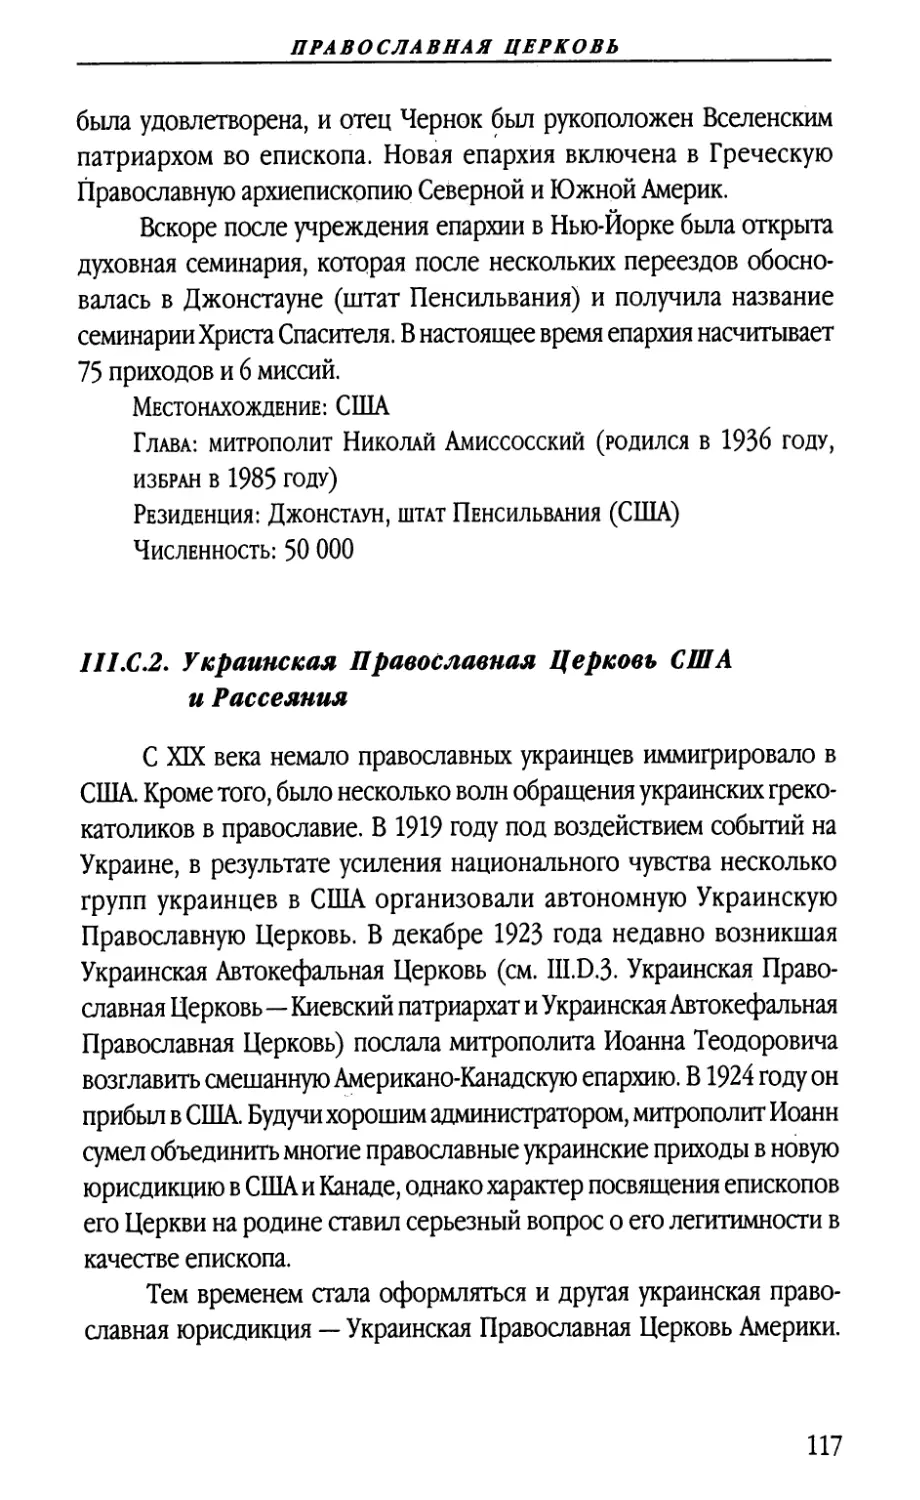 III.C.2. Украинская Православная Церковь США и Рассеяния